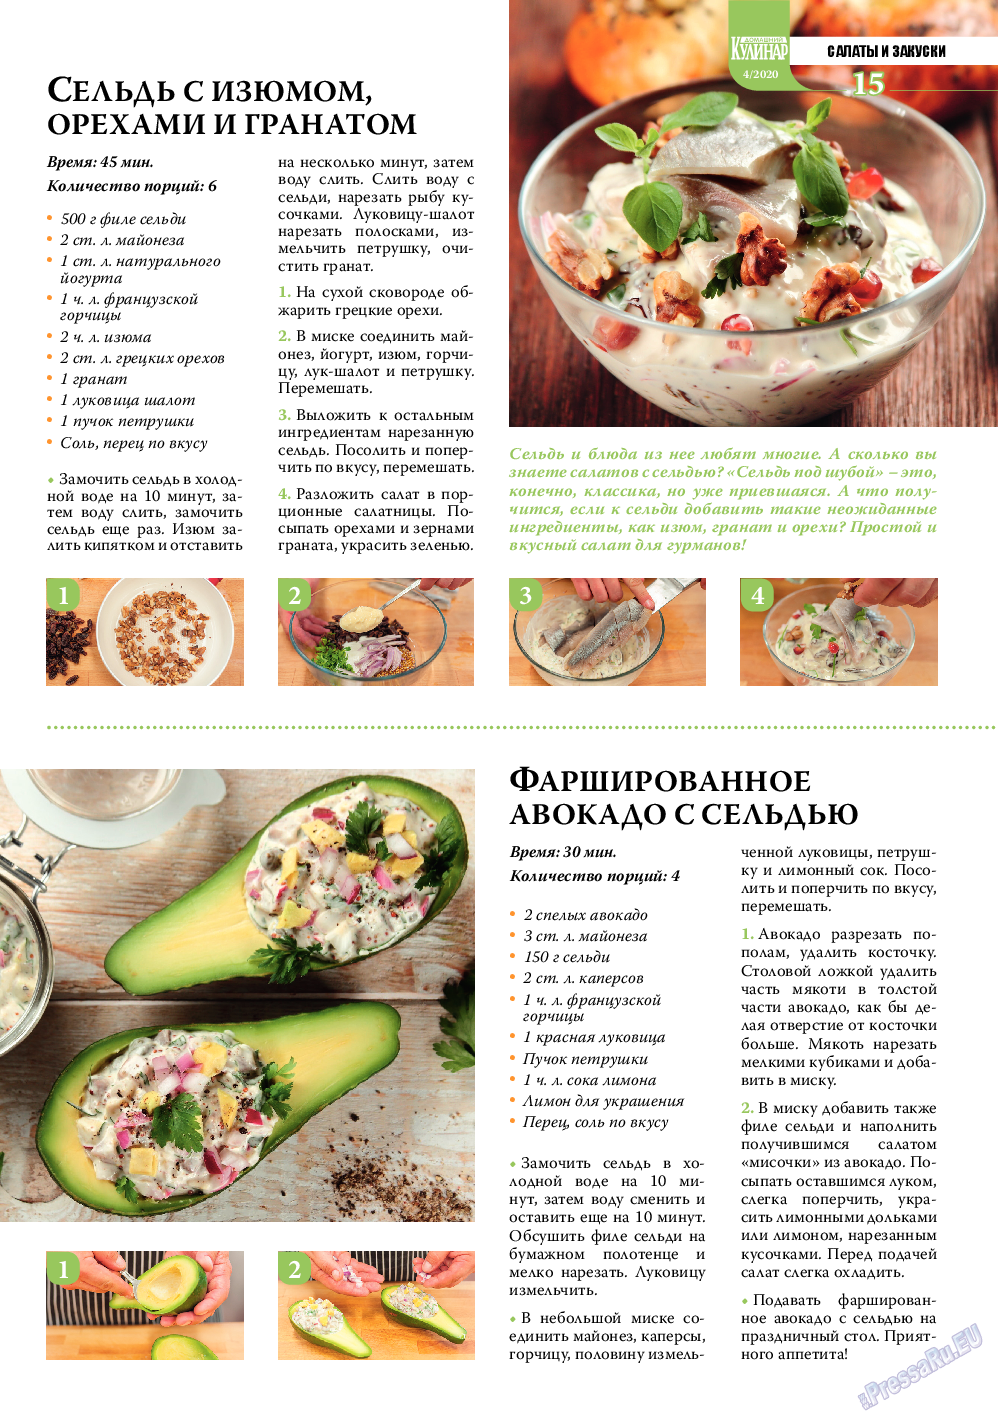 Домашний кулинар, журнал. 2020 №4 стр.15